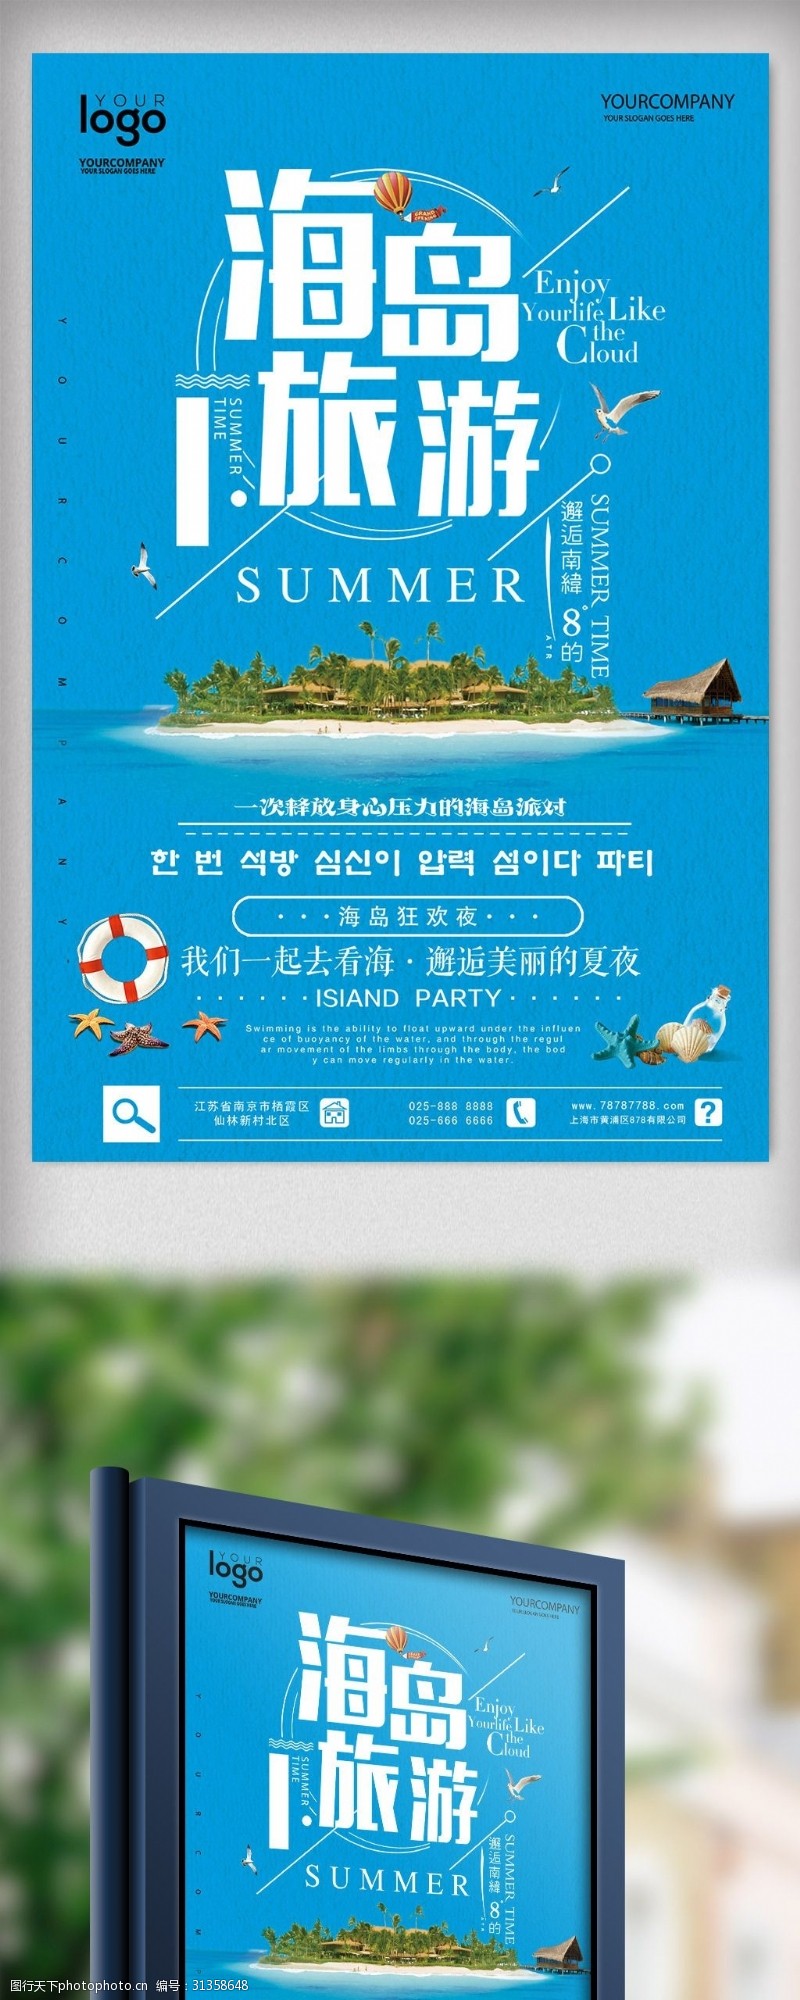 旅游公司海报简洁海岛派对旅行创意海报